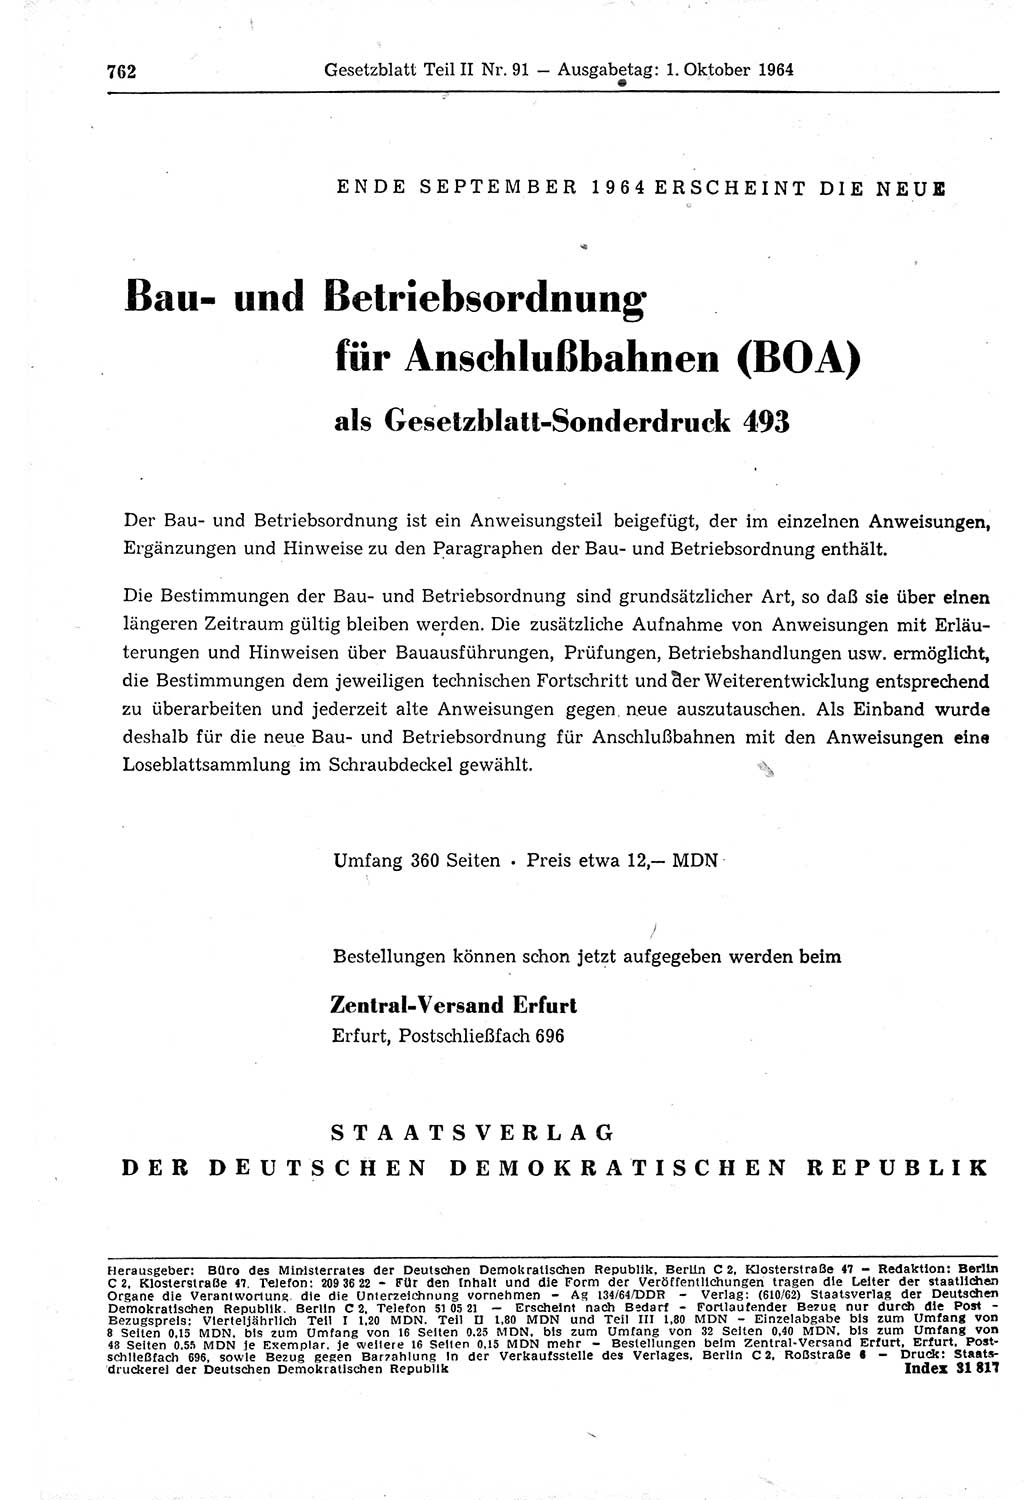 Gesetzblatt (GBl.) der Deutschen Demokratischen Republik (DDR) Teil ⅠⅠ 1964, Seite 762 (GBl. DDR ⅠⅠ 1964, S. 762)